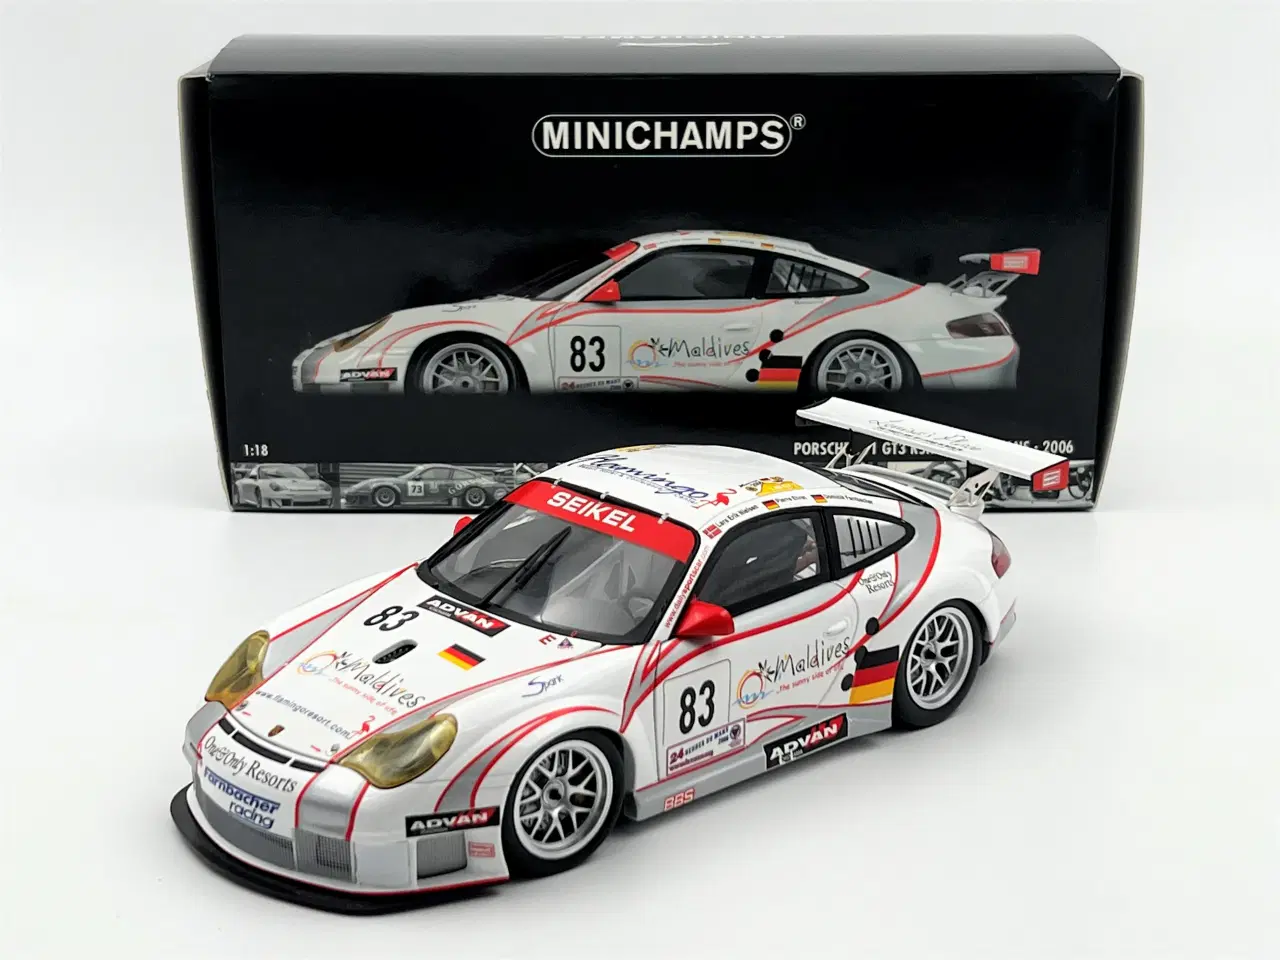 Billede 1 - 2006 Porsche 911 GT3 RSR #83 - Minichamps - 1:18